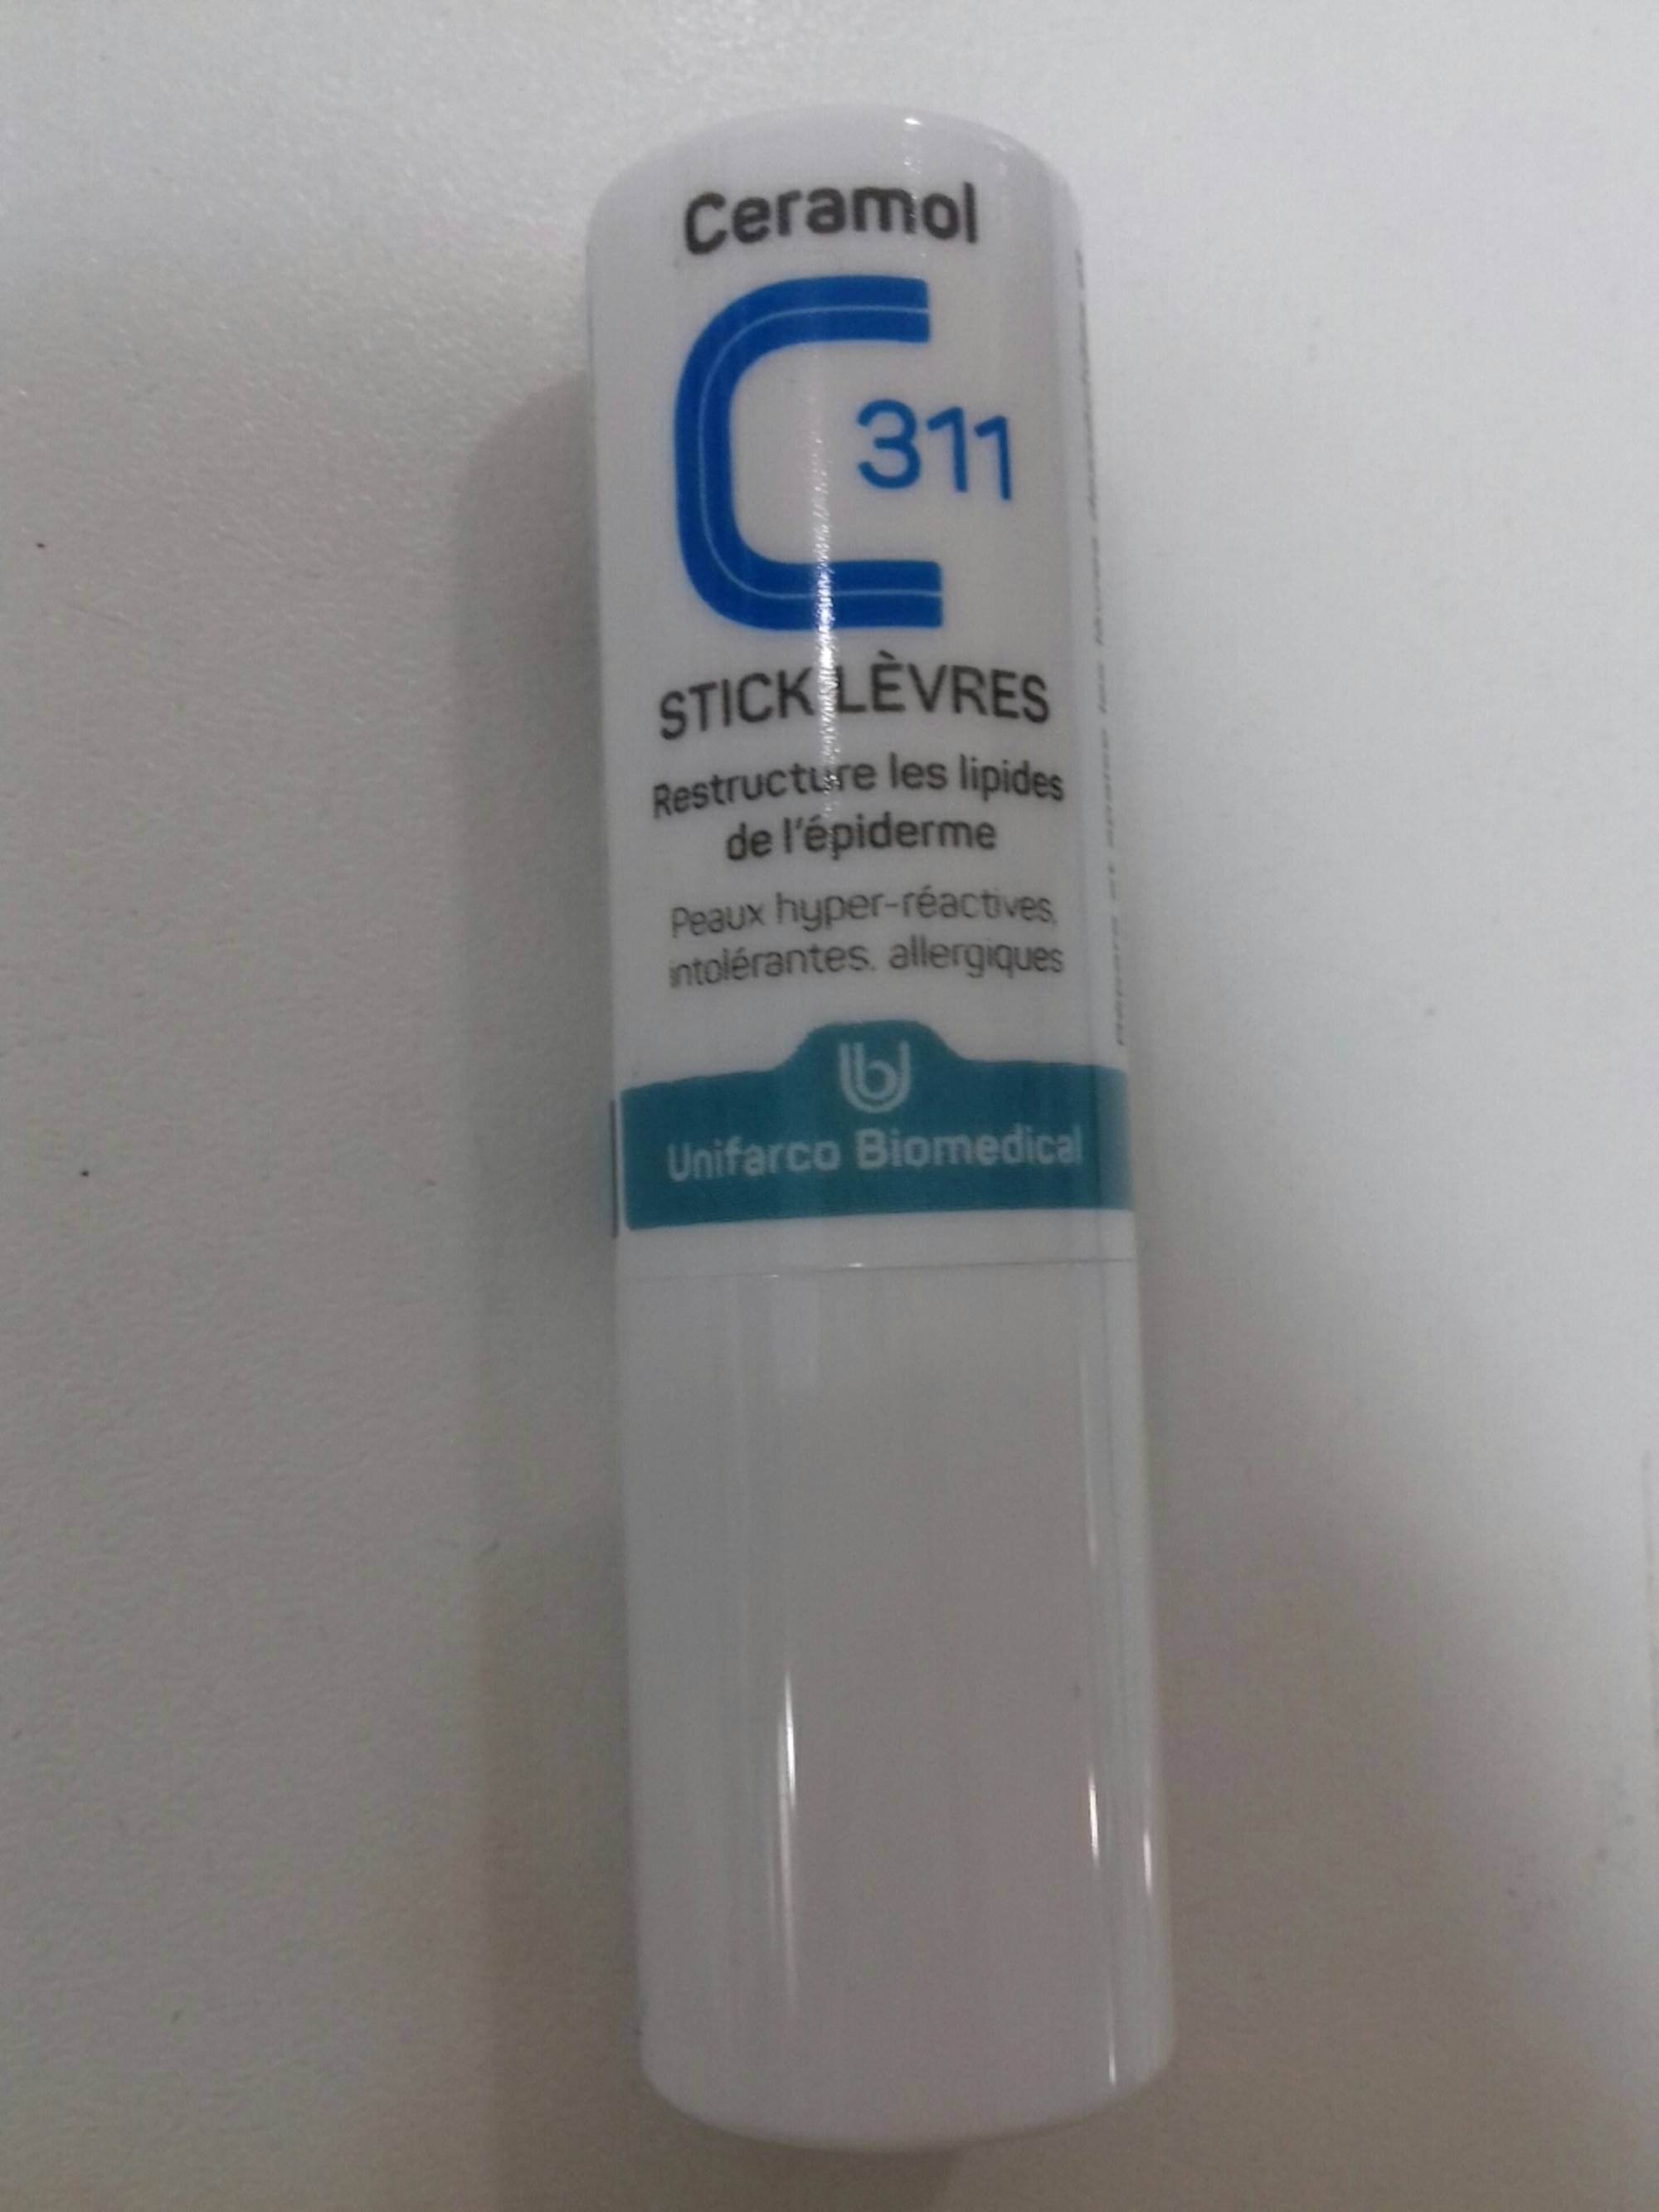 CERAMOL - C 311 stick lèvres - Restructure les lipides de lépiderme